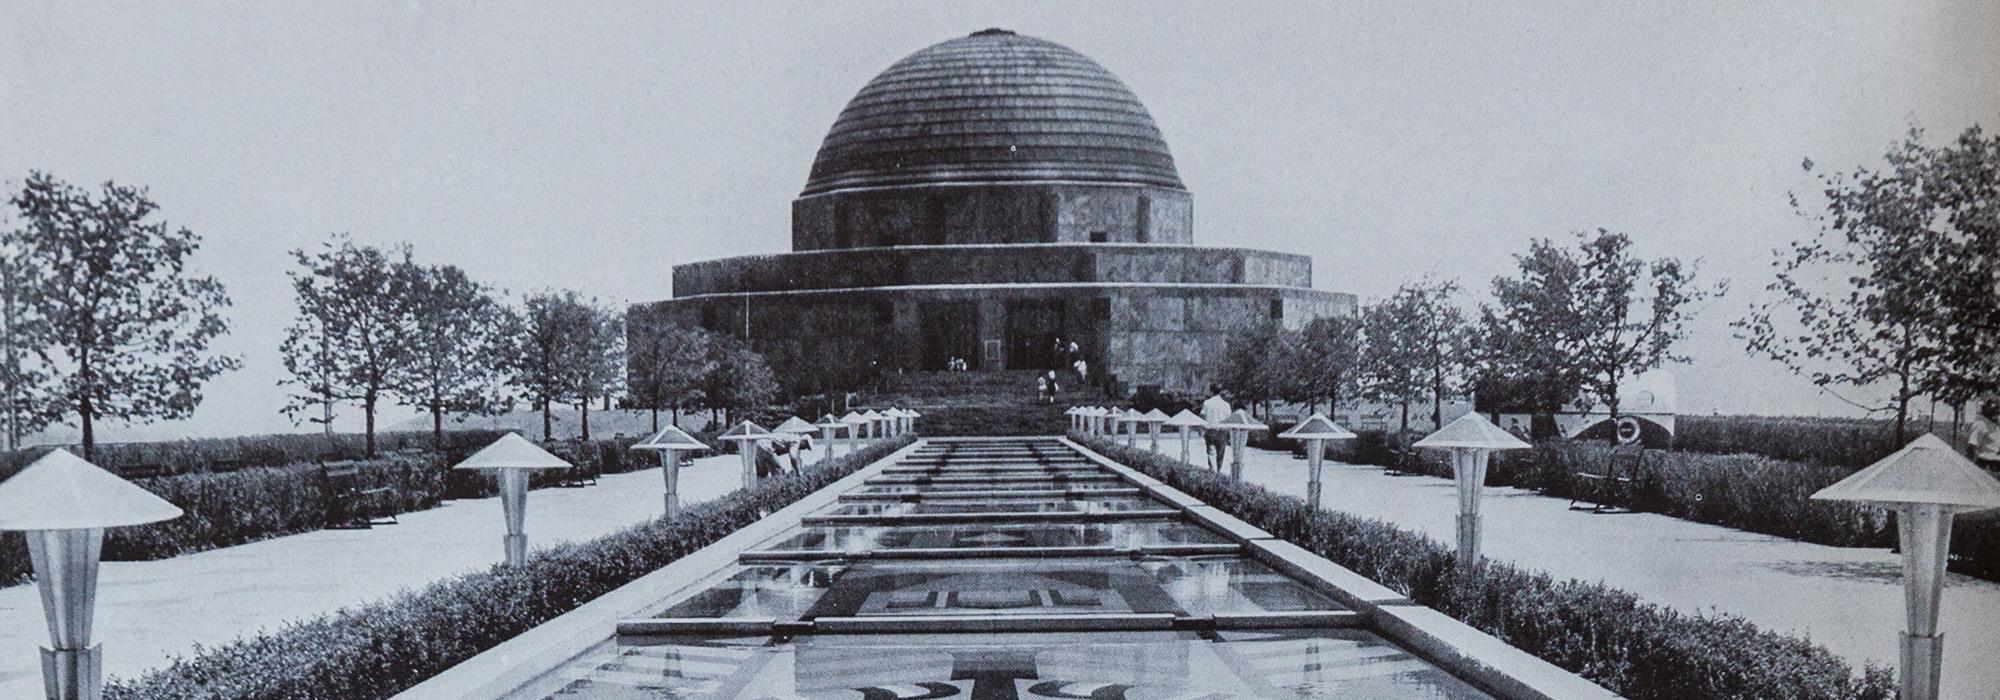 Adler Planetarium, Century of Progress Chicago World's Fair, 1933